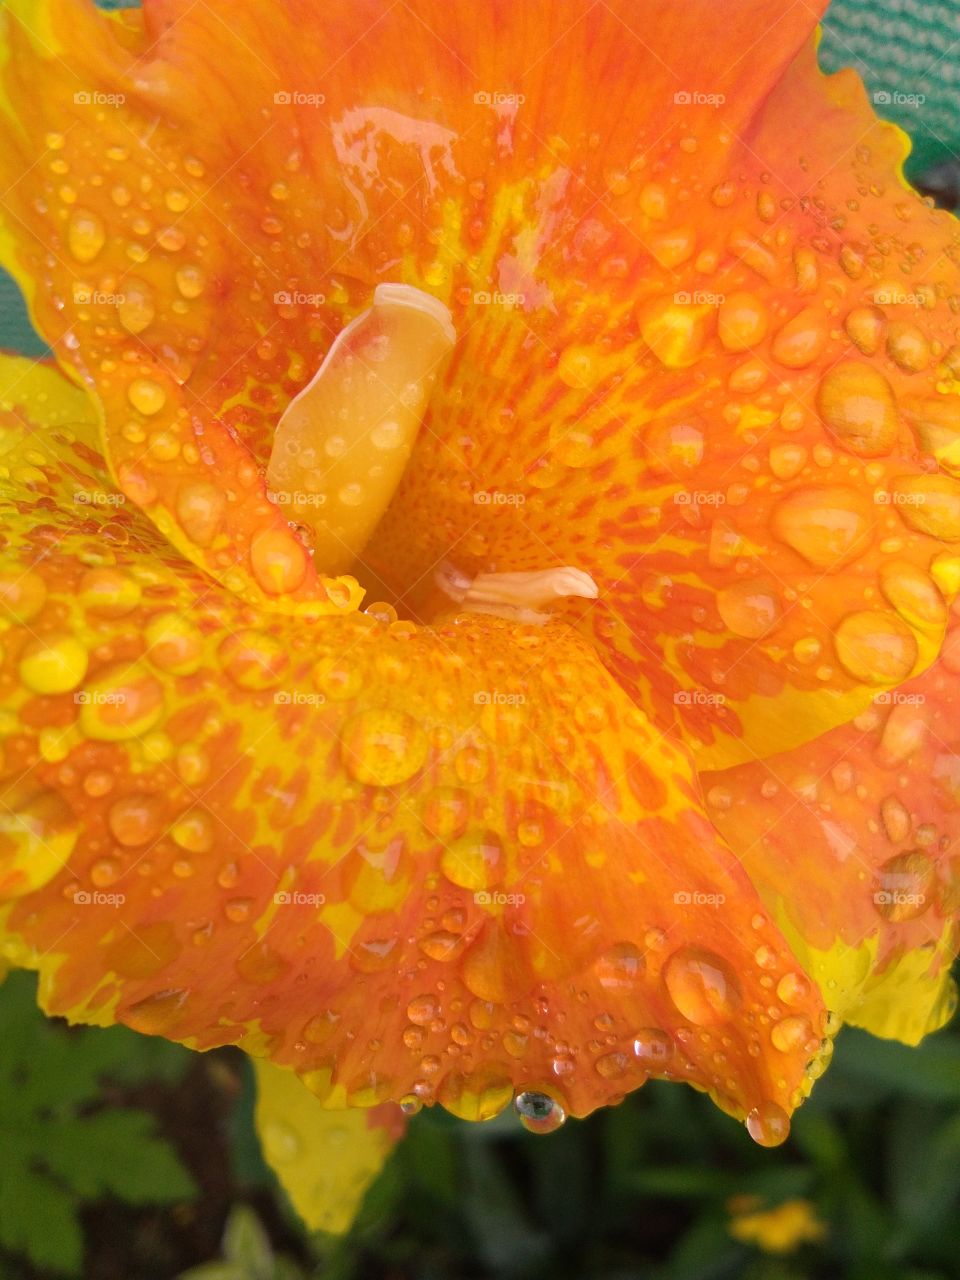 yellow rainy flower